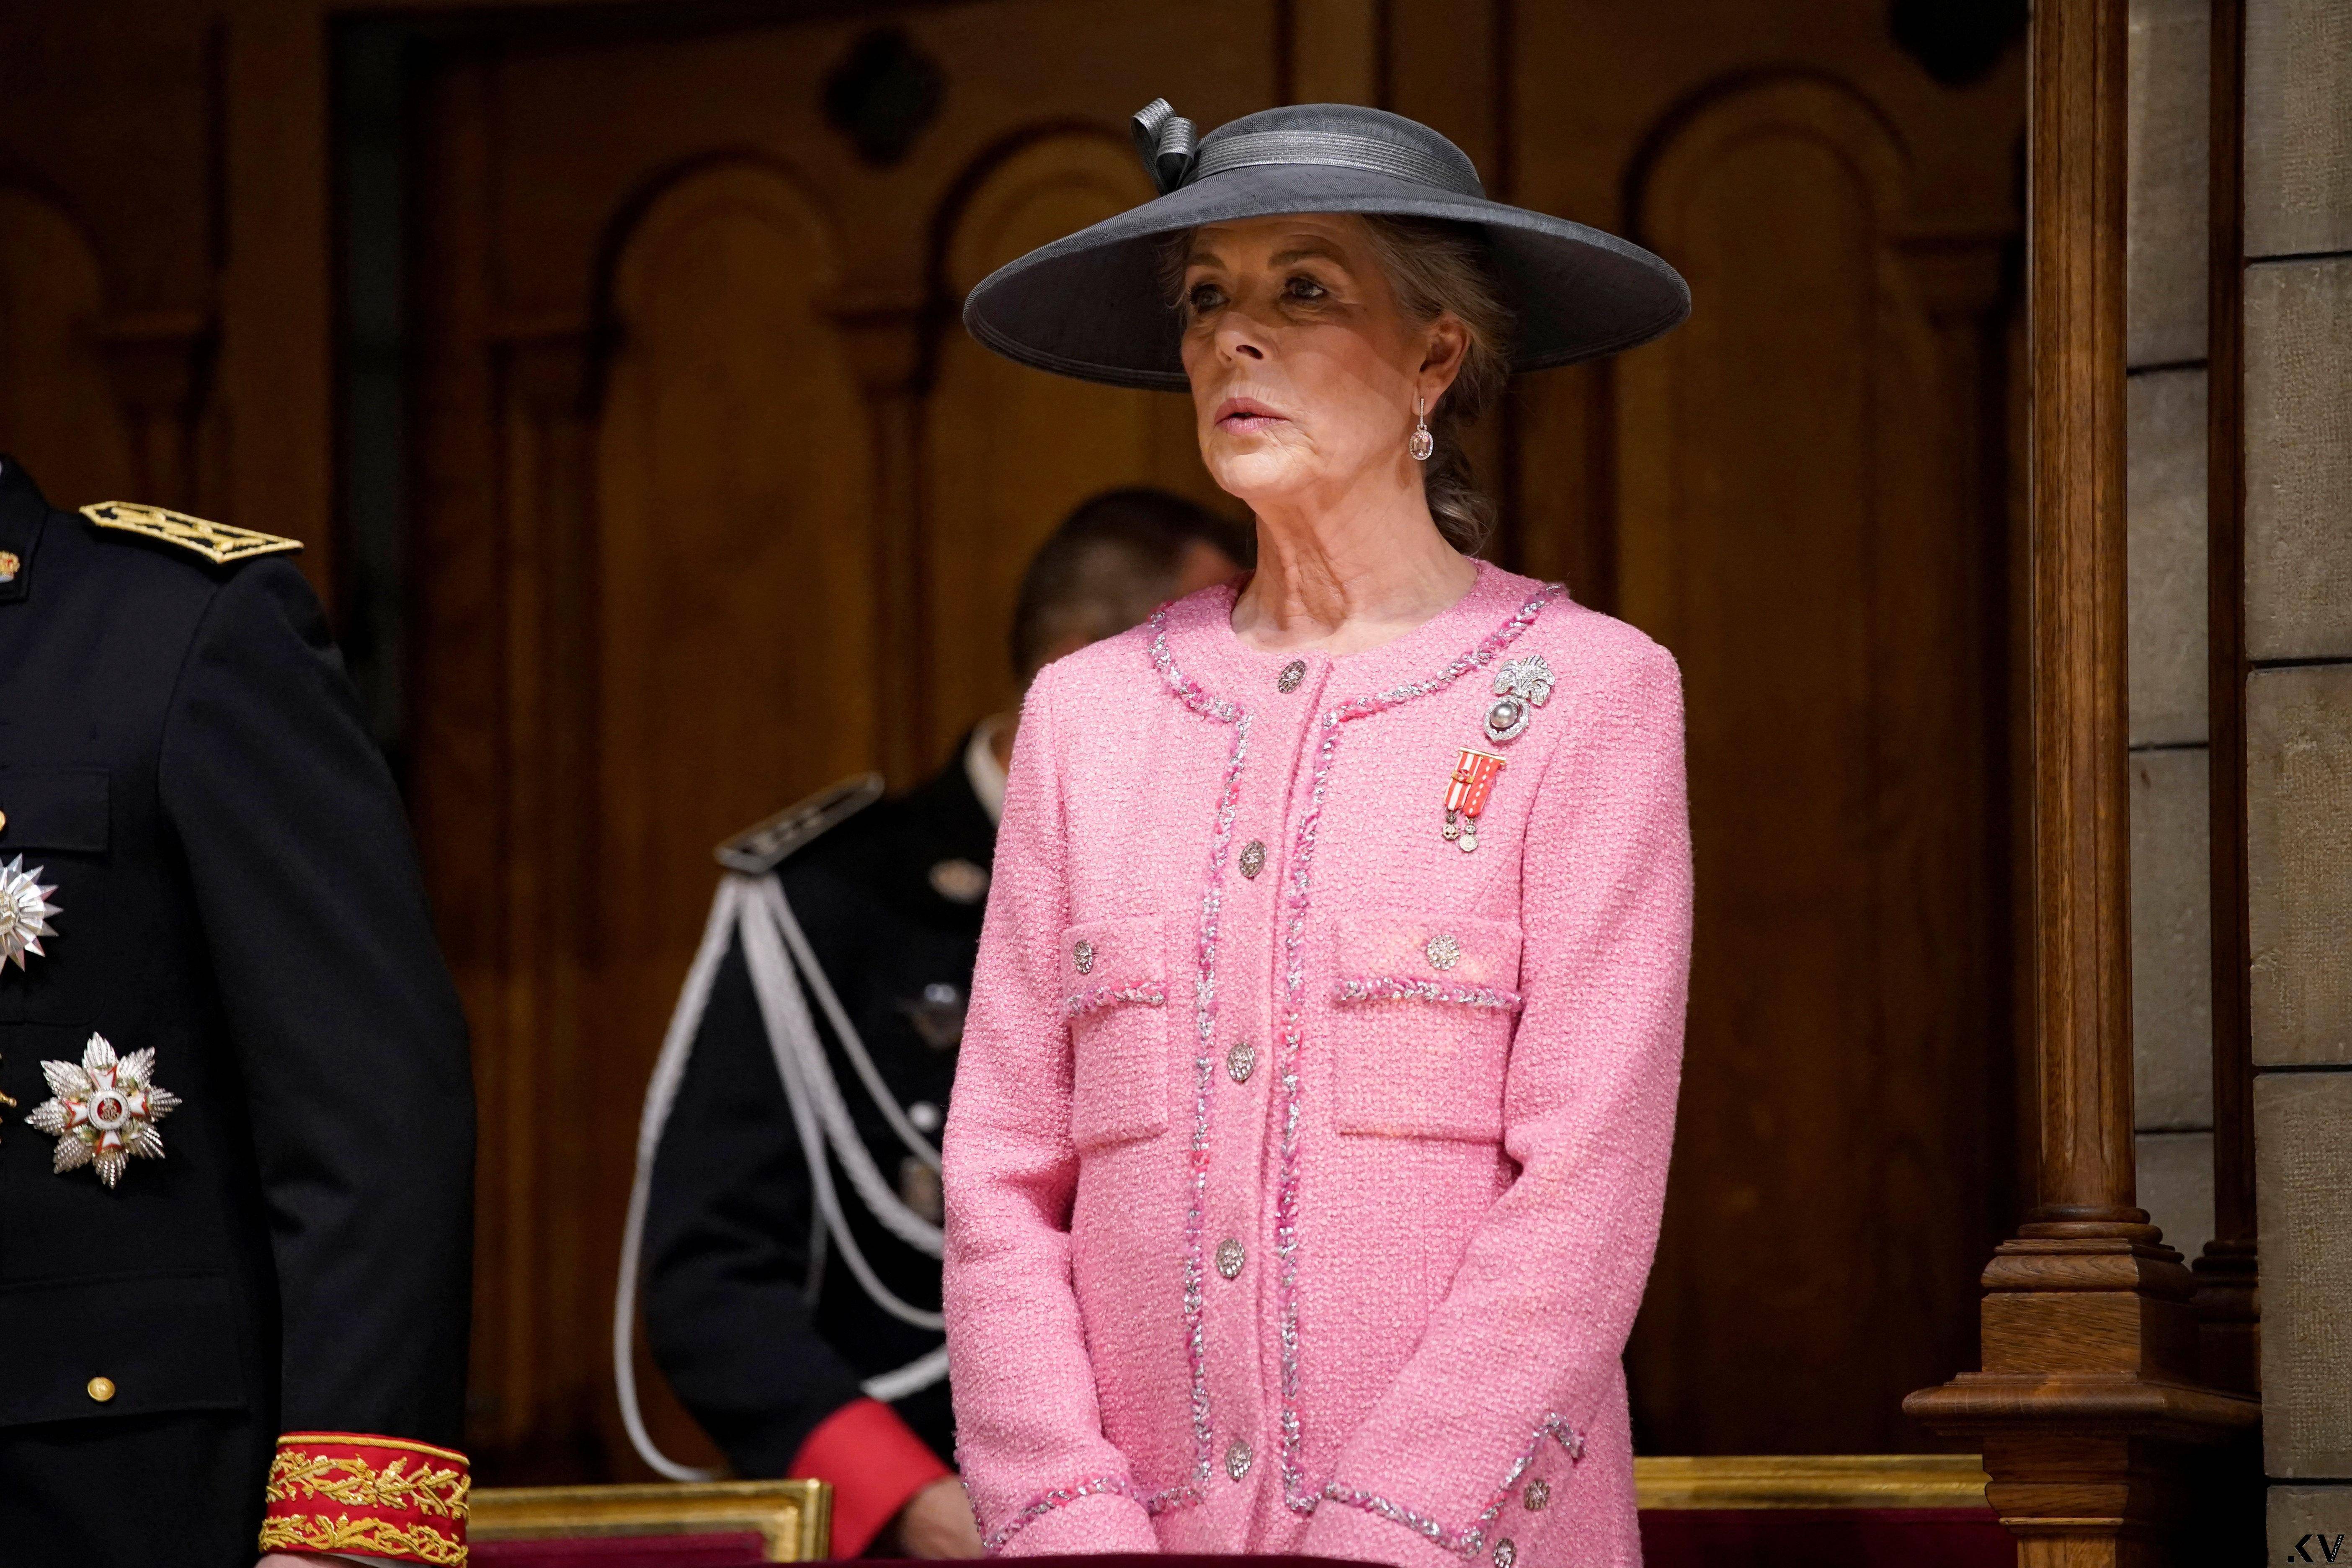 摩纳哥王室把香奈儿当制服穿　“最美王子妃”Dior红装突围 时尚穿搭 图5张